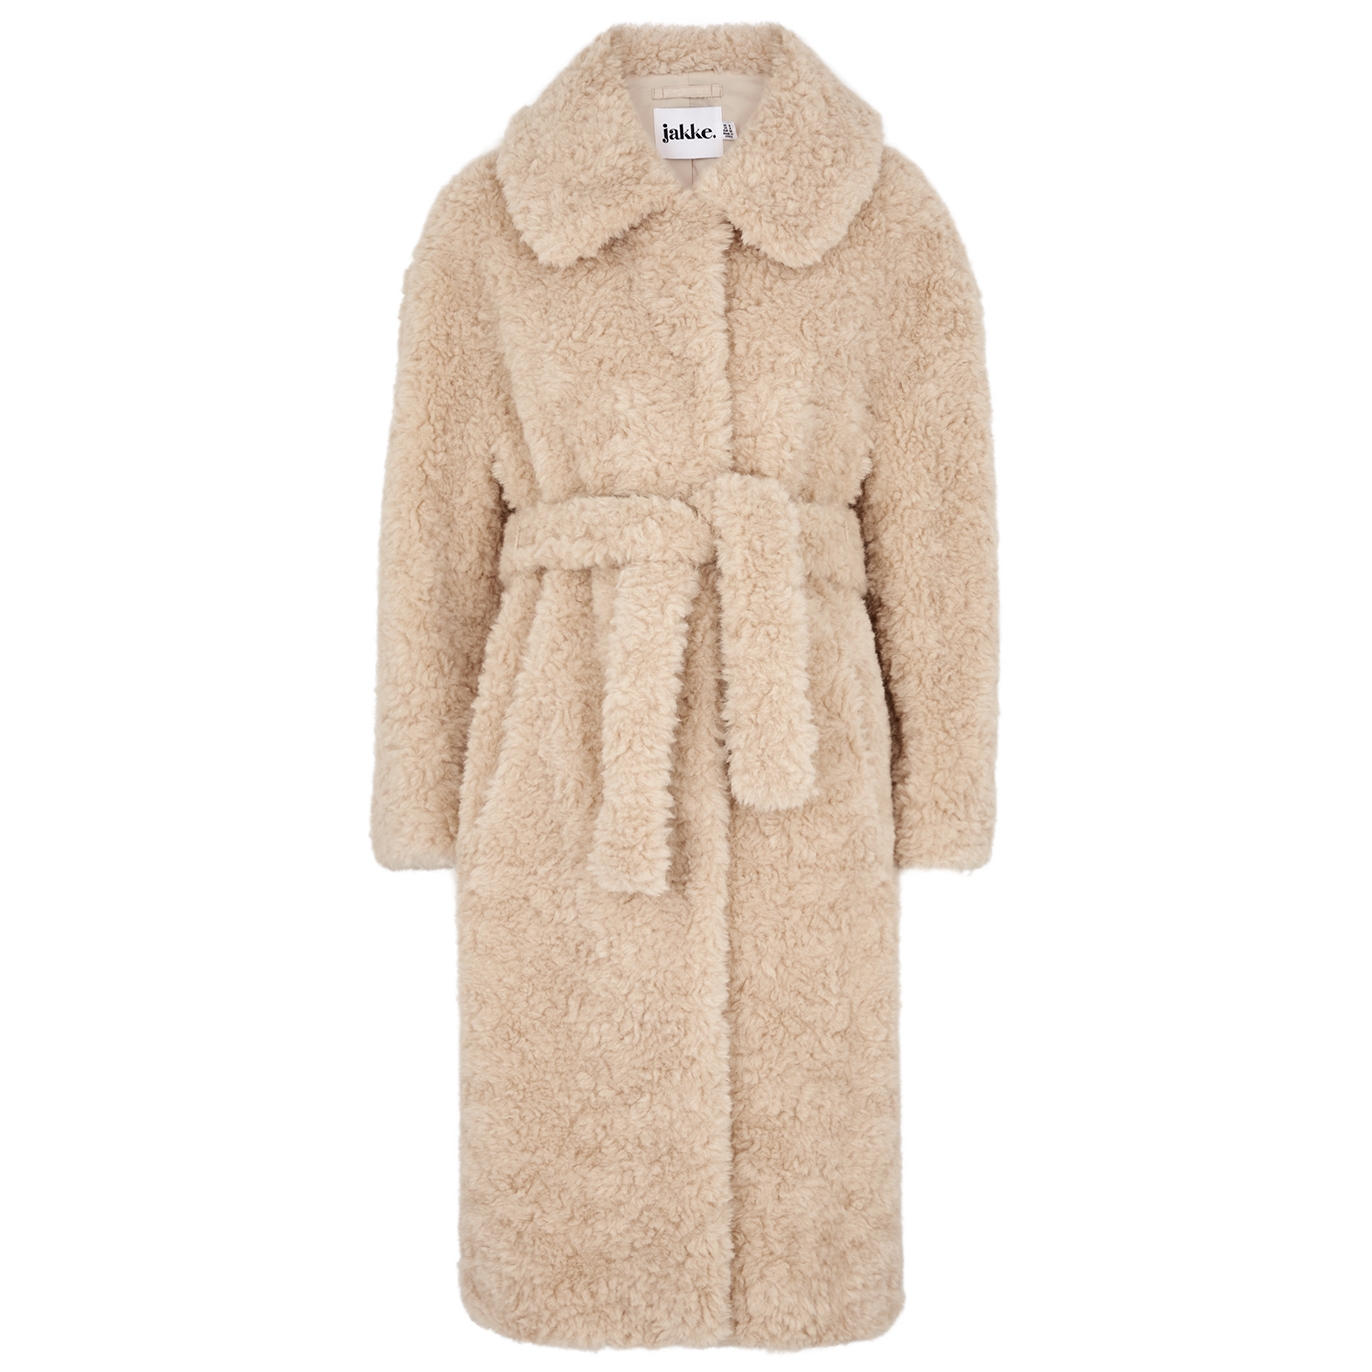 Jakke Katrina Sand Textured Faux Fur Coat - Beige - L